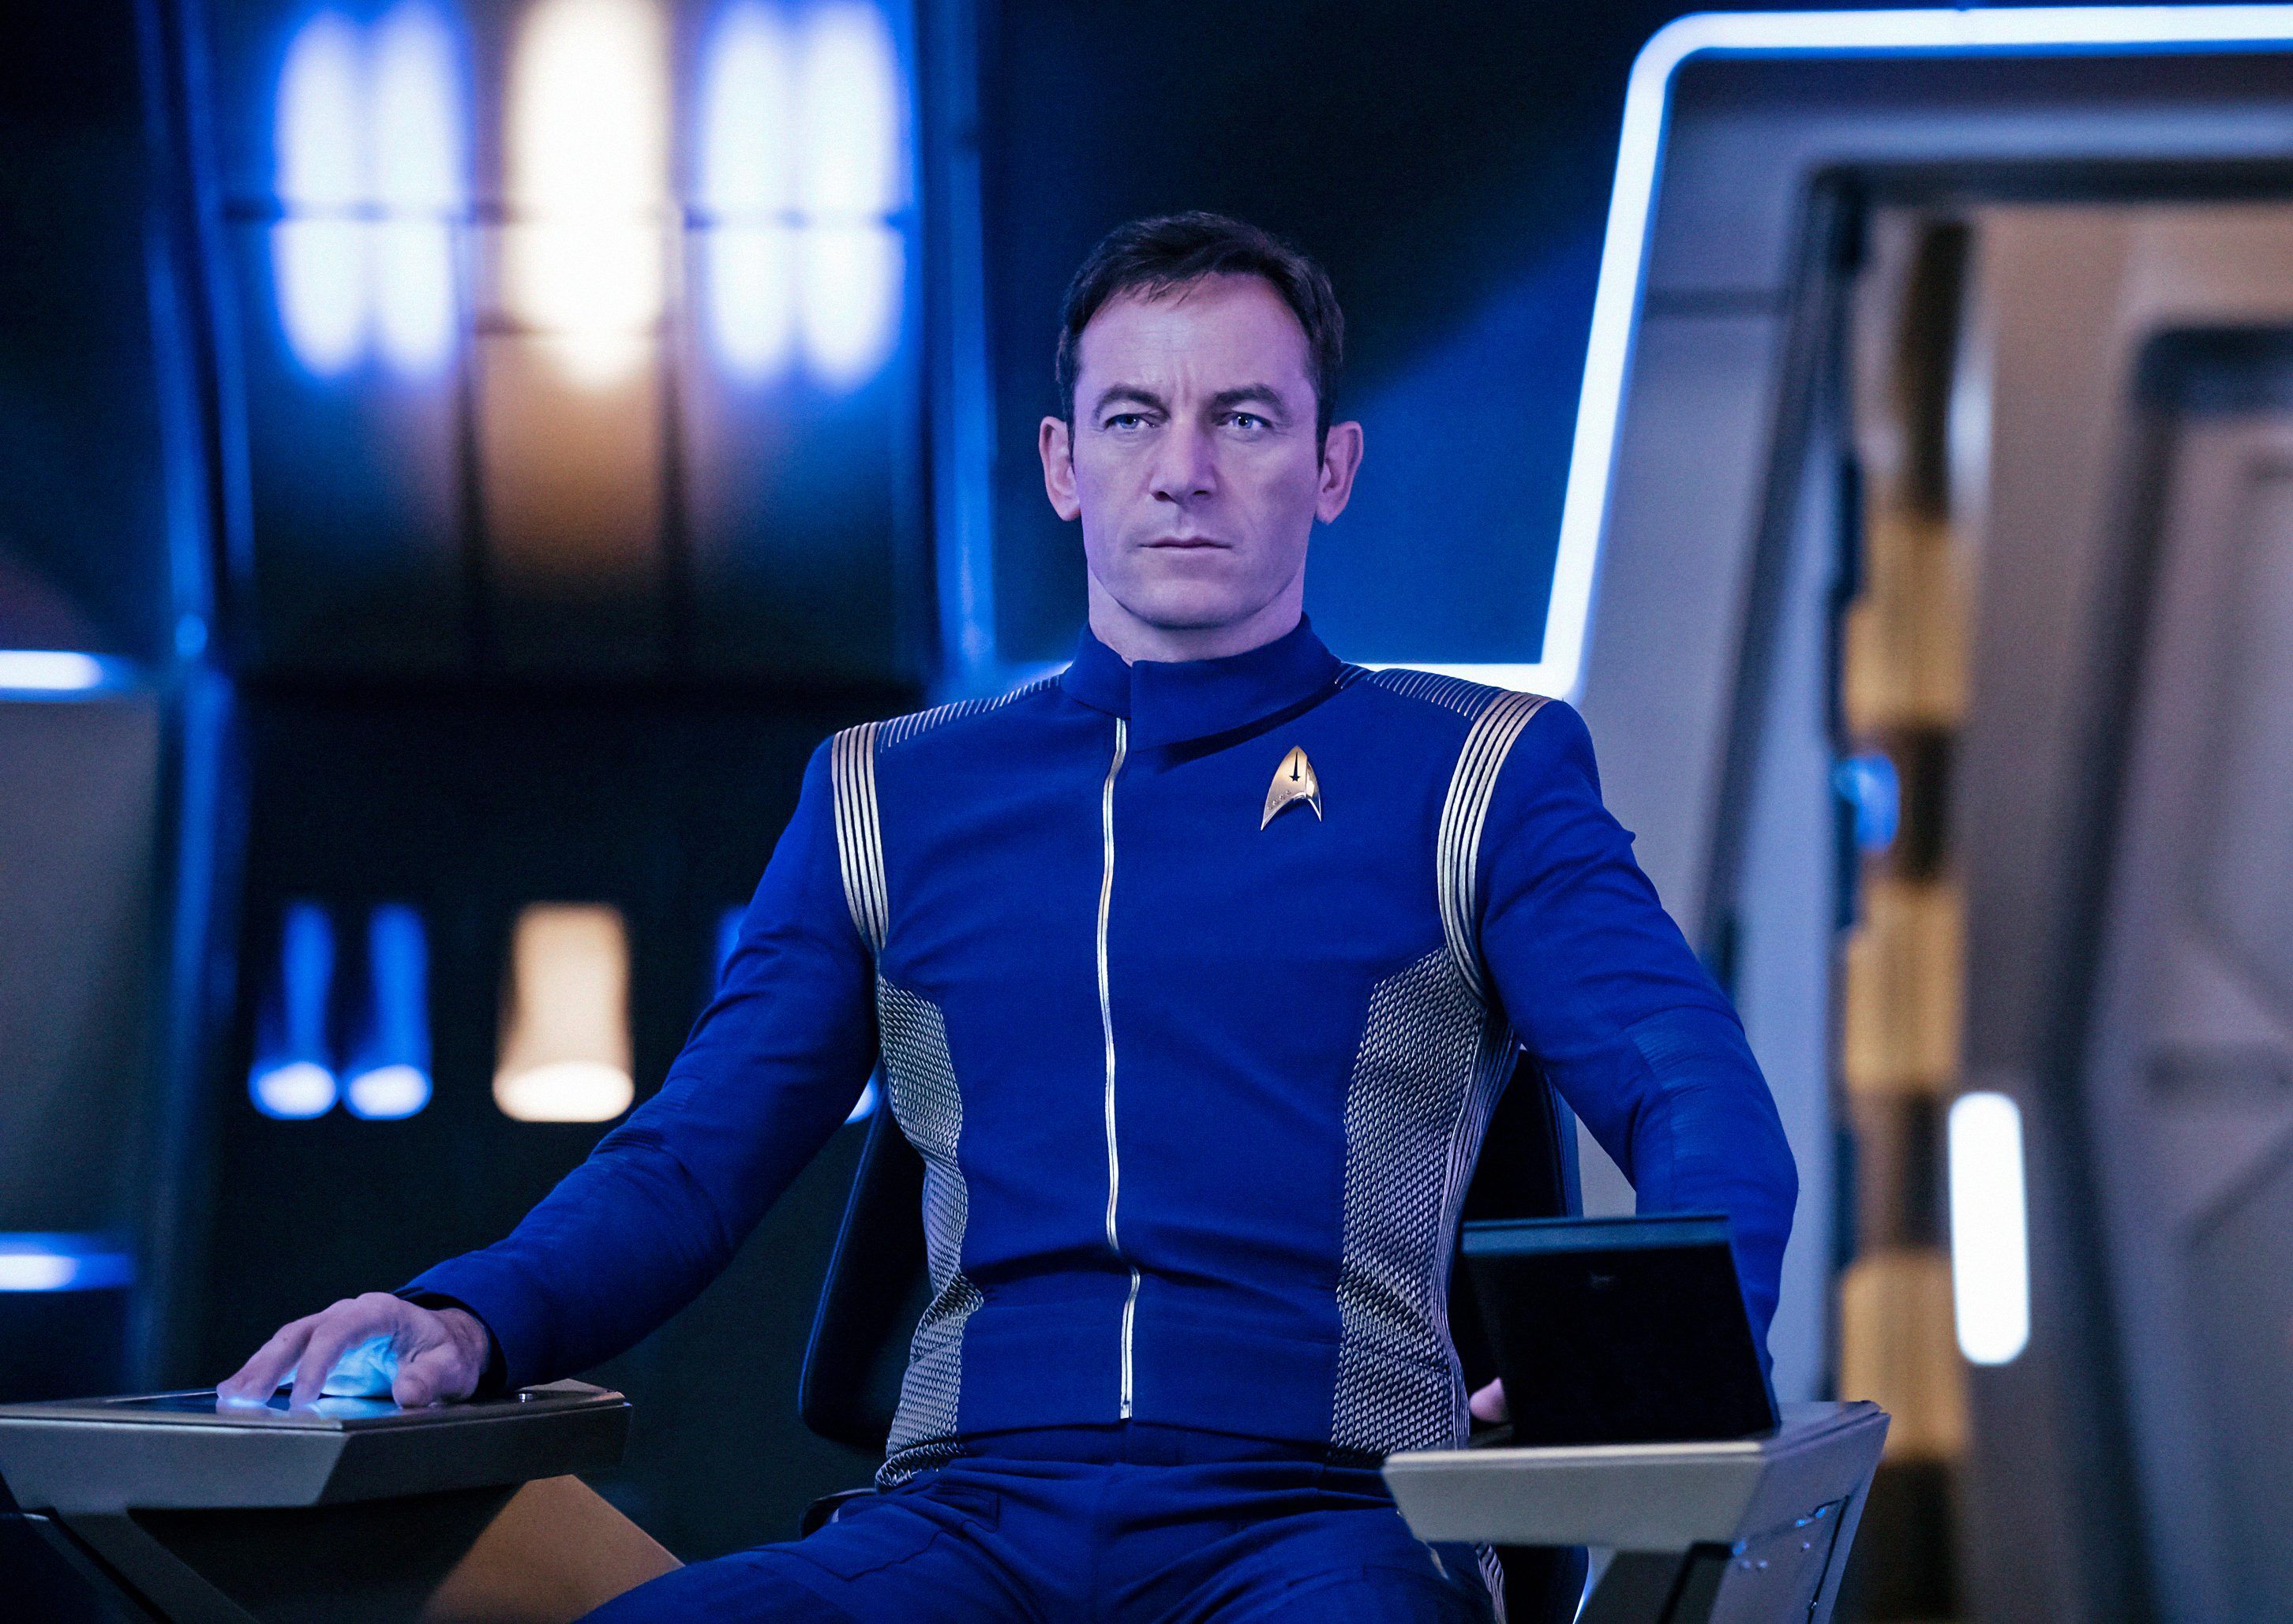 Wann wird Star Trek: Discovery Staffel 2 veröffentlicht? Wer ist in der Besetzung und was wird passieren?